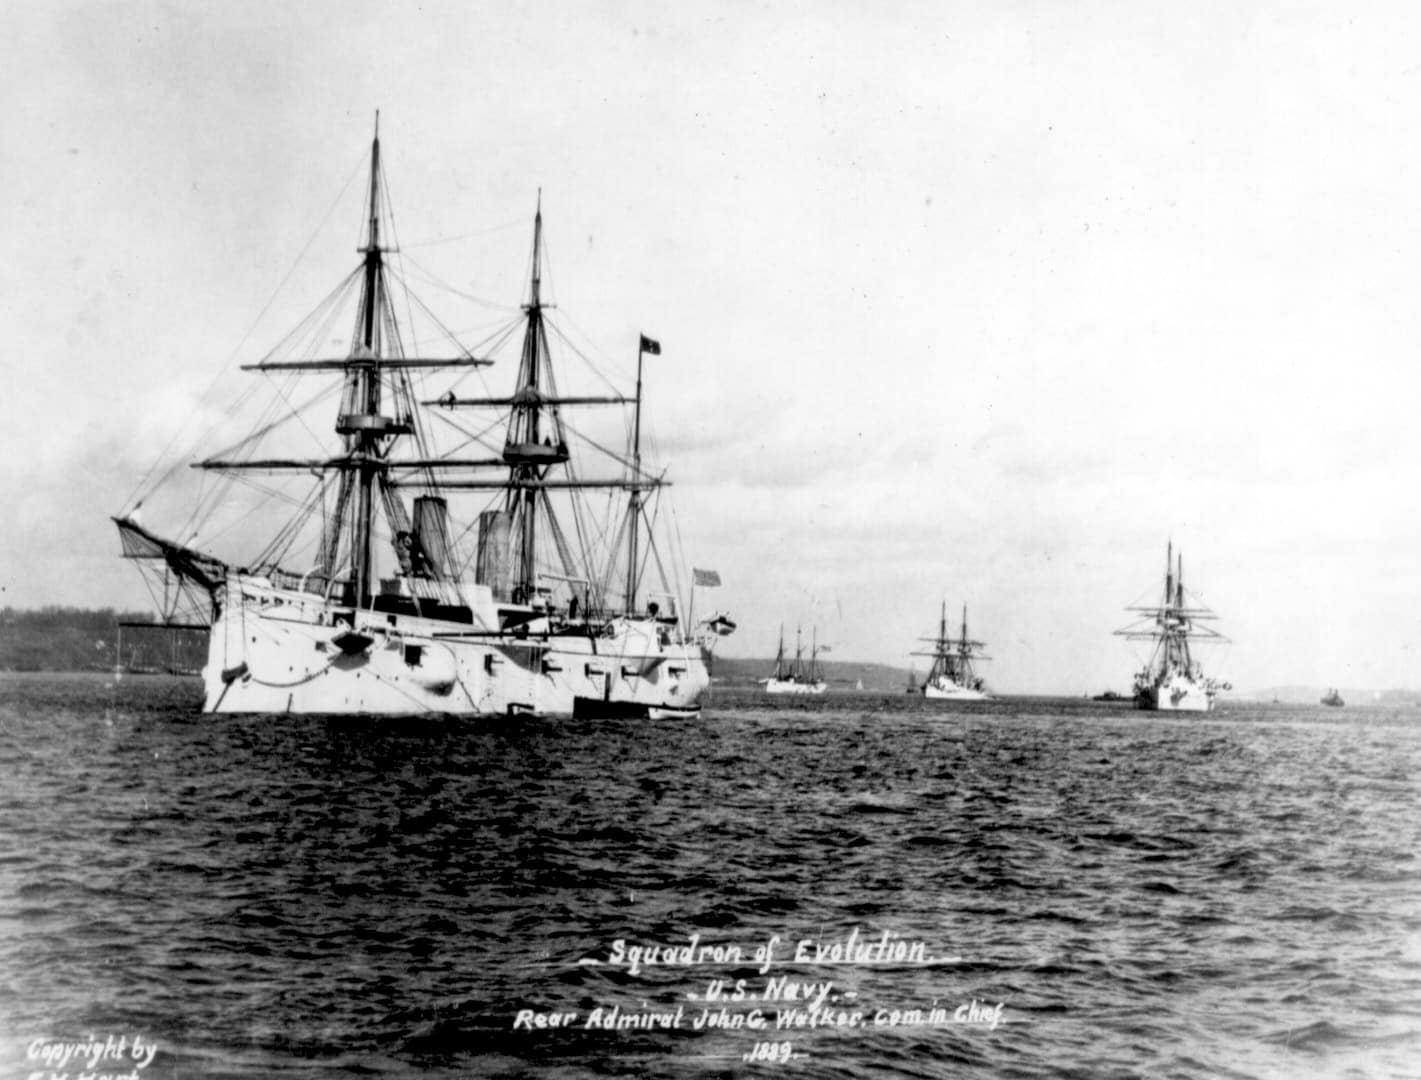 Yorktown class gunboats